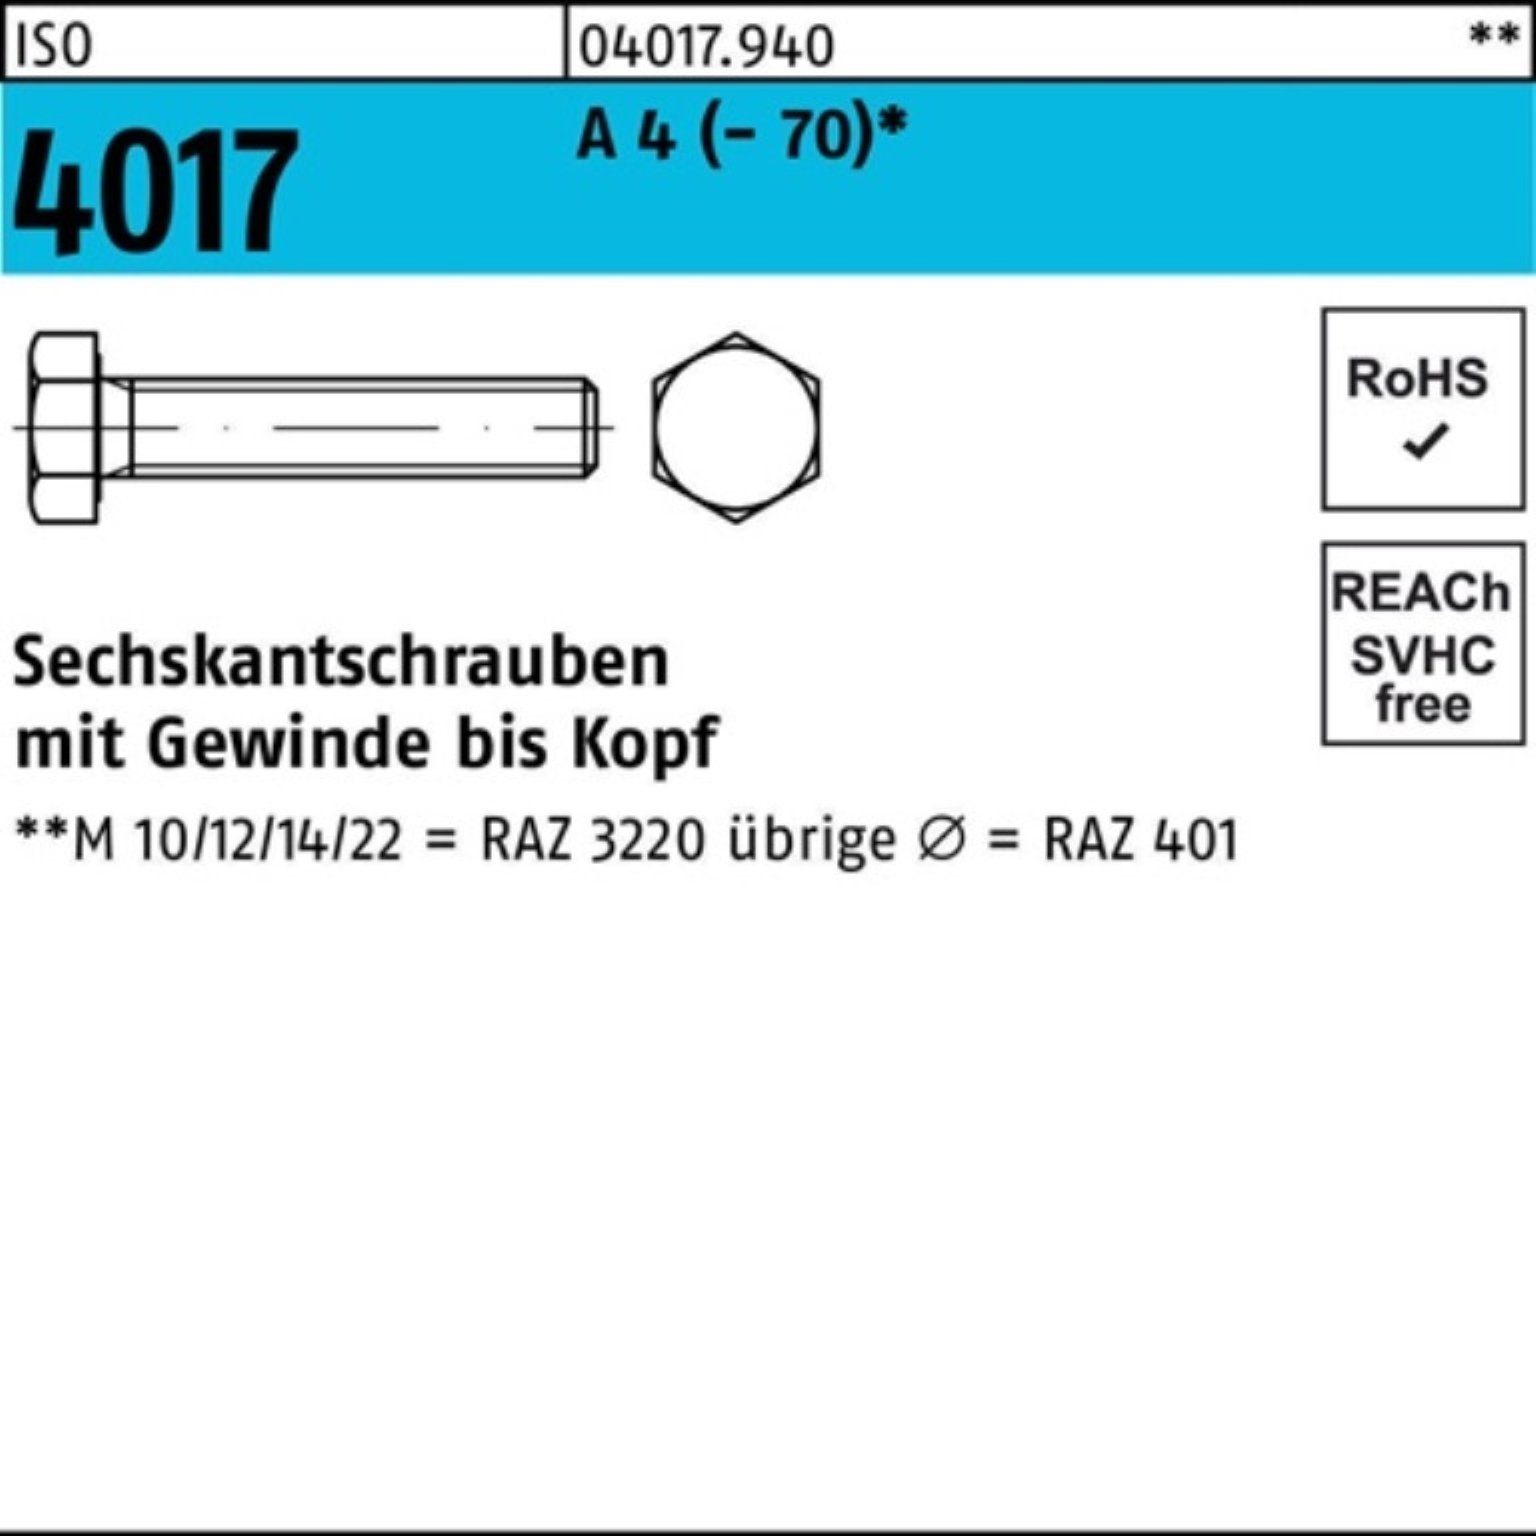 Bufab Sechskantschraube 100er Pack Sechskantschraube ISO 4017 VG M20x 90 A 4 (70) 1 Stück I